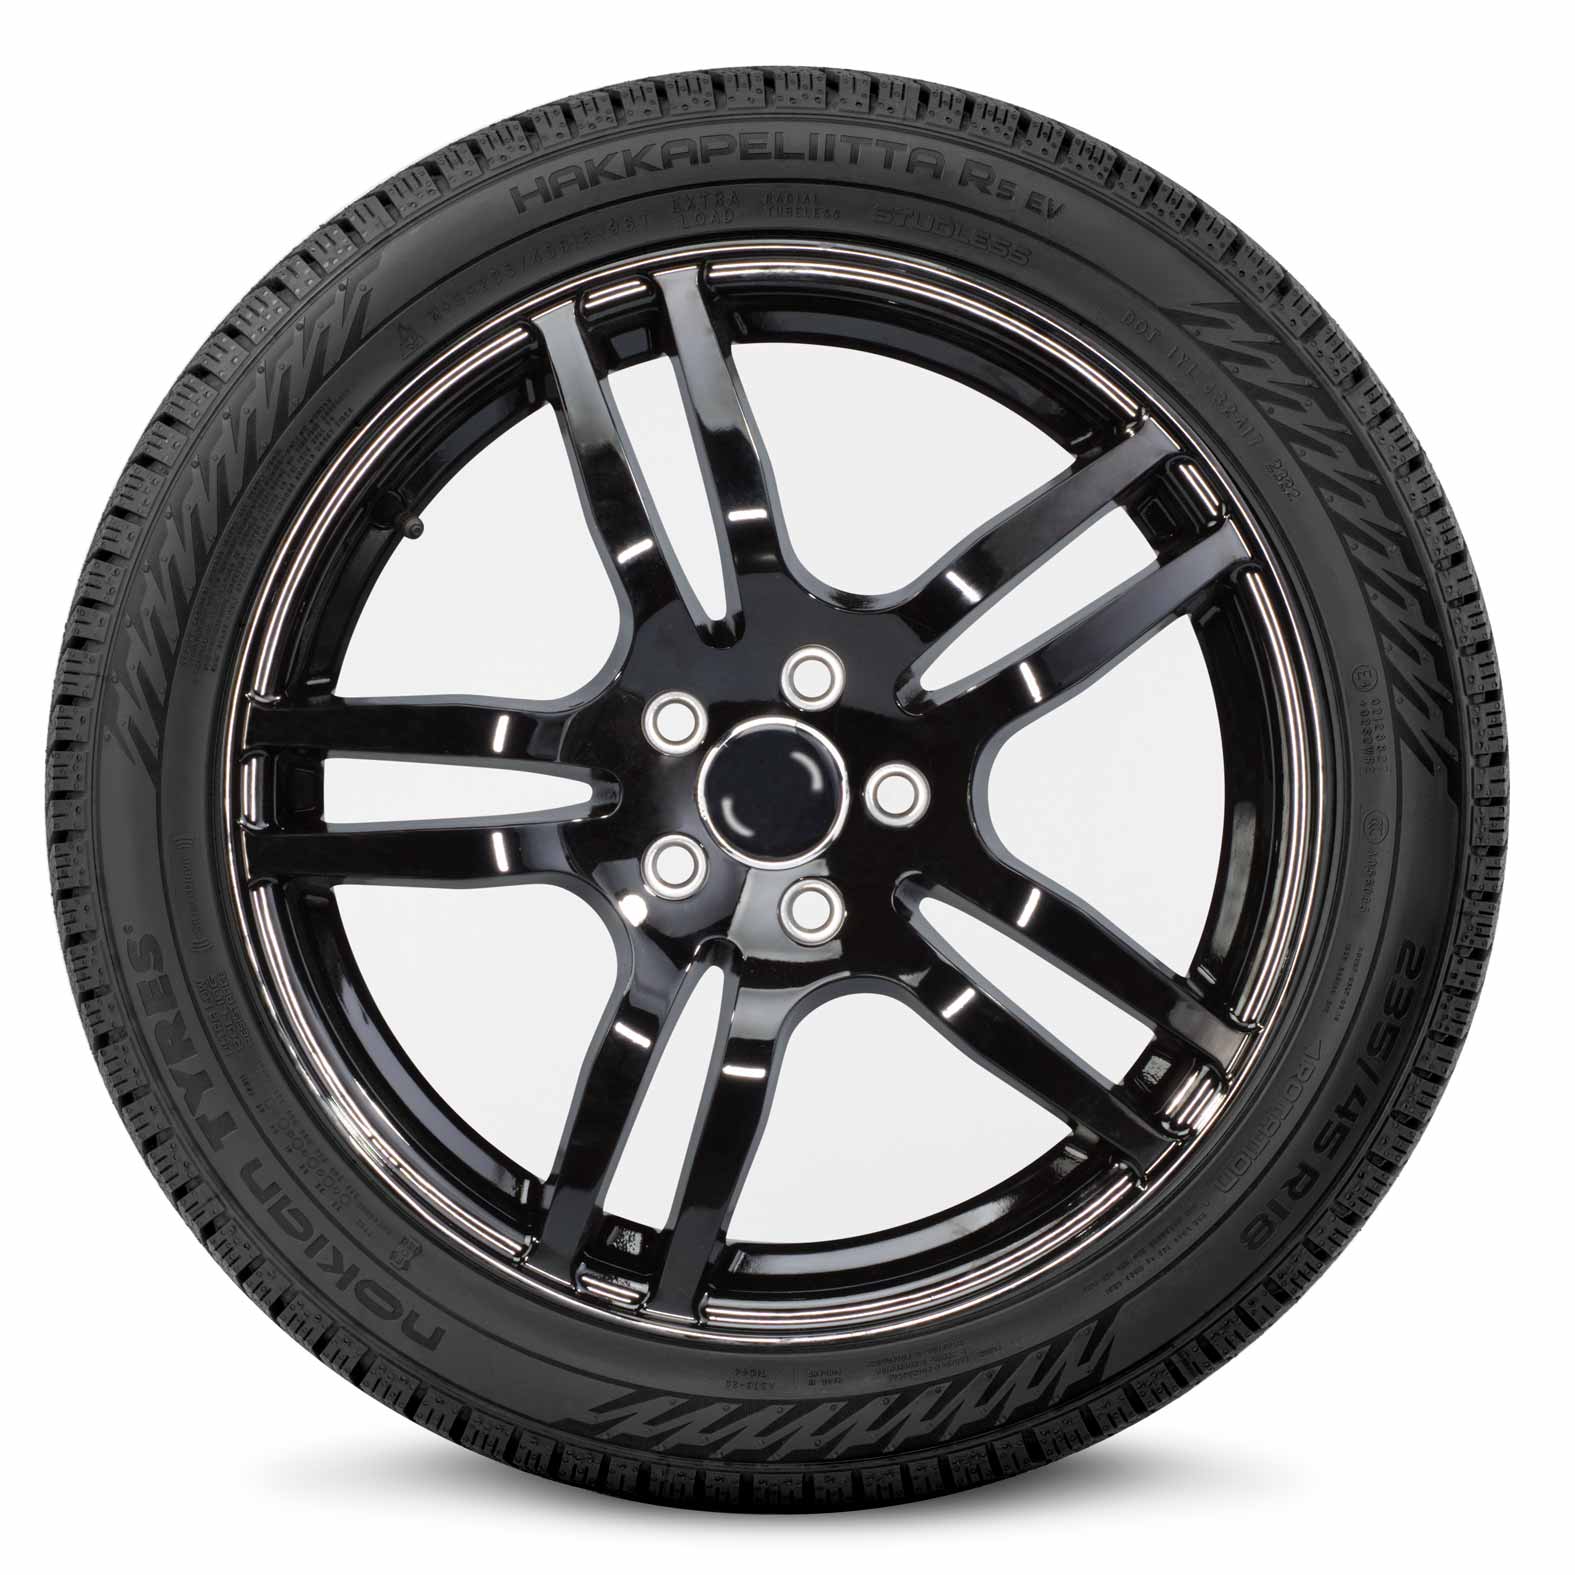 Nokian Hakkapeliitta R5 EV Tire for Winter | Kal Tire